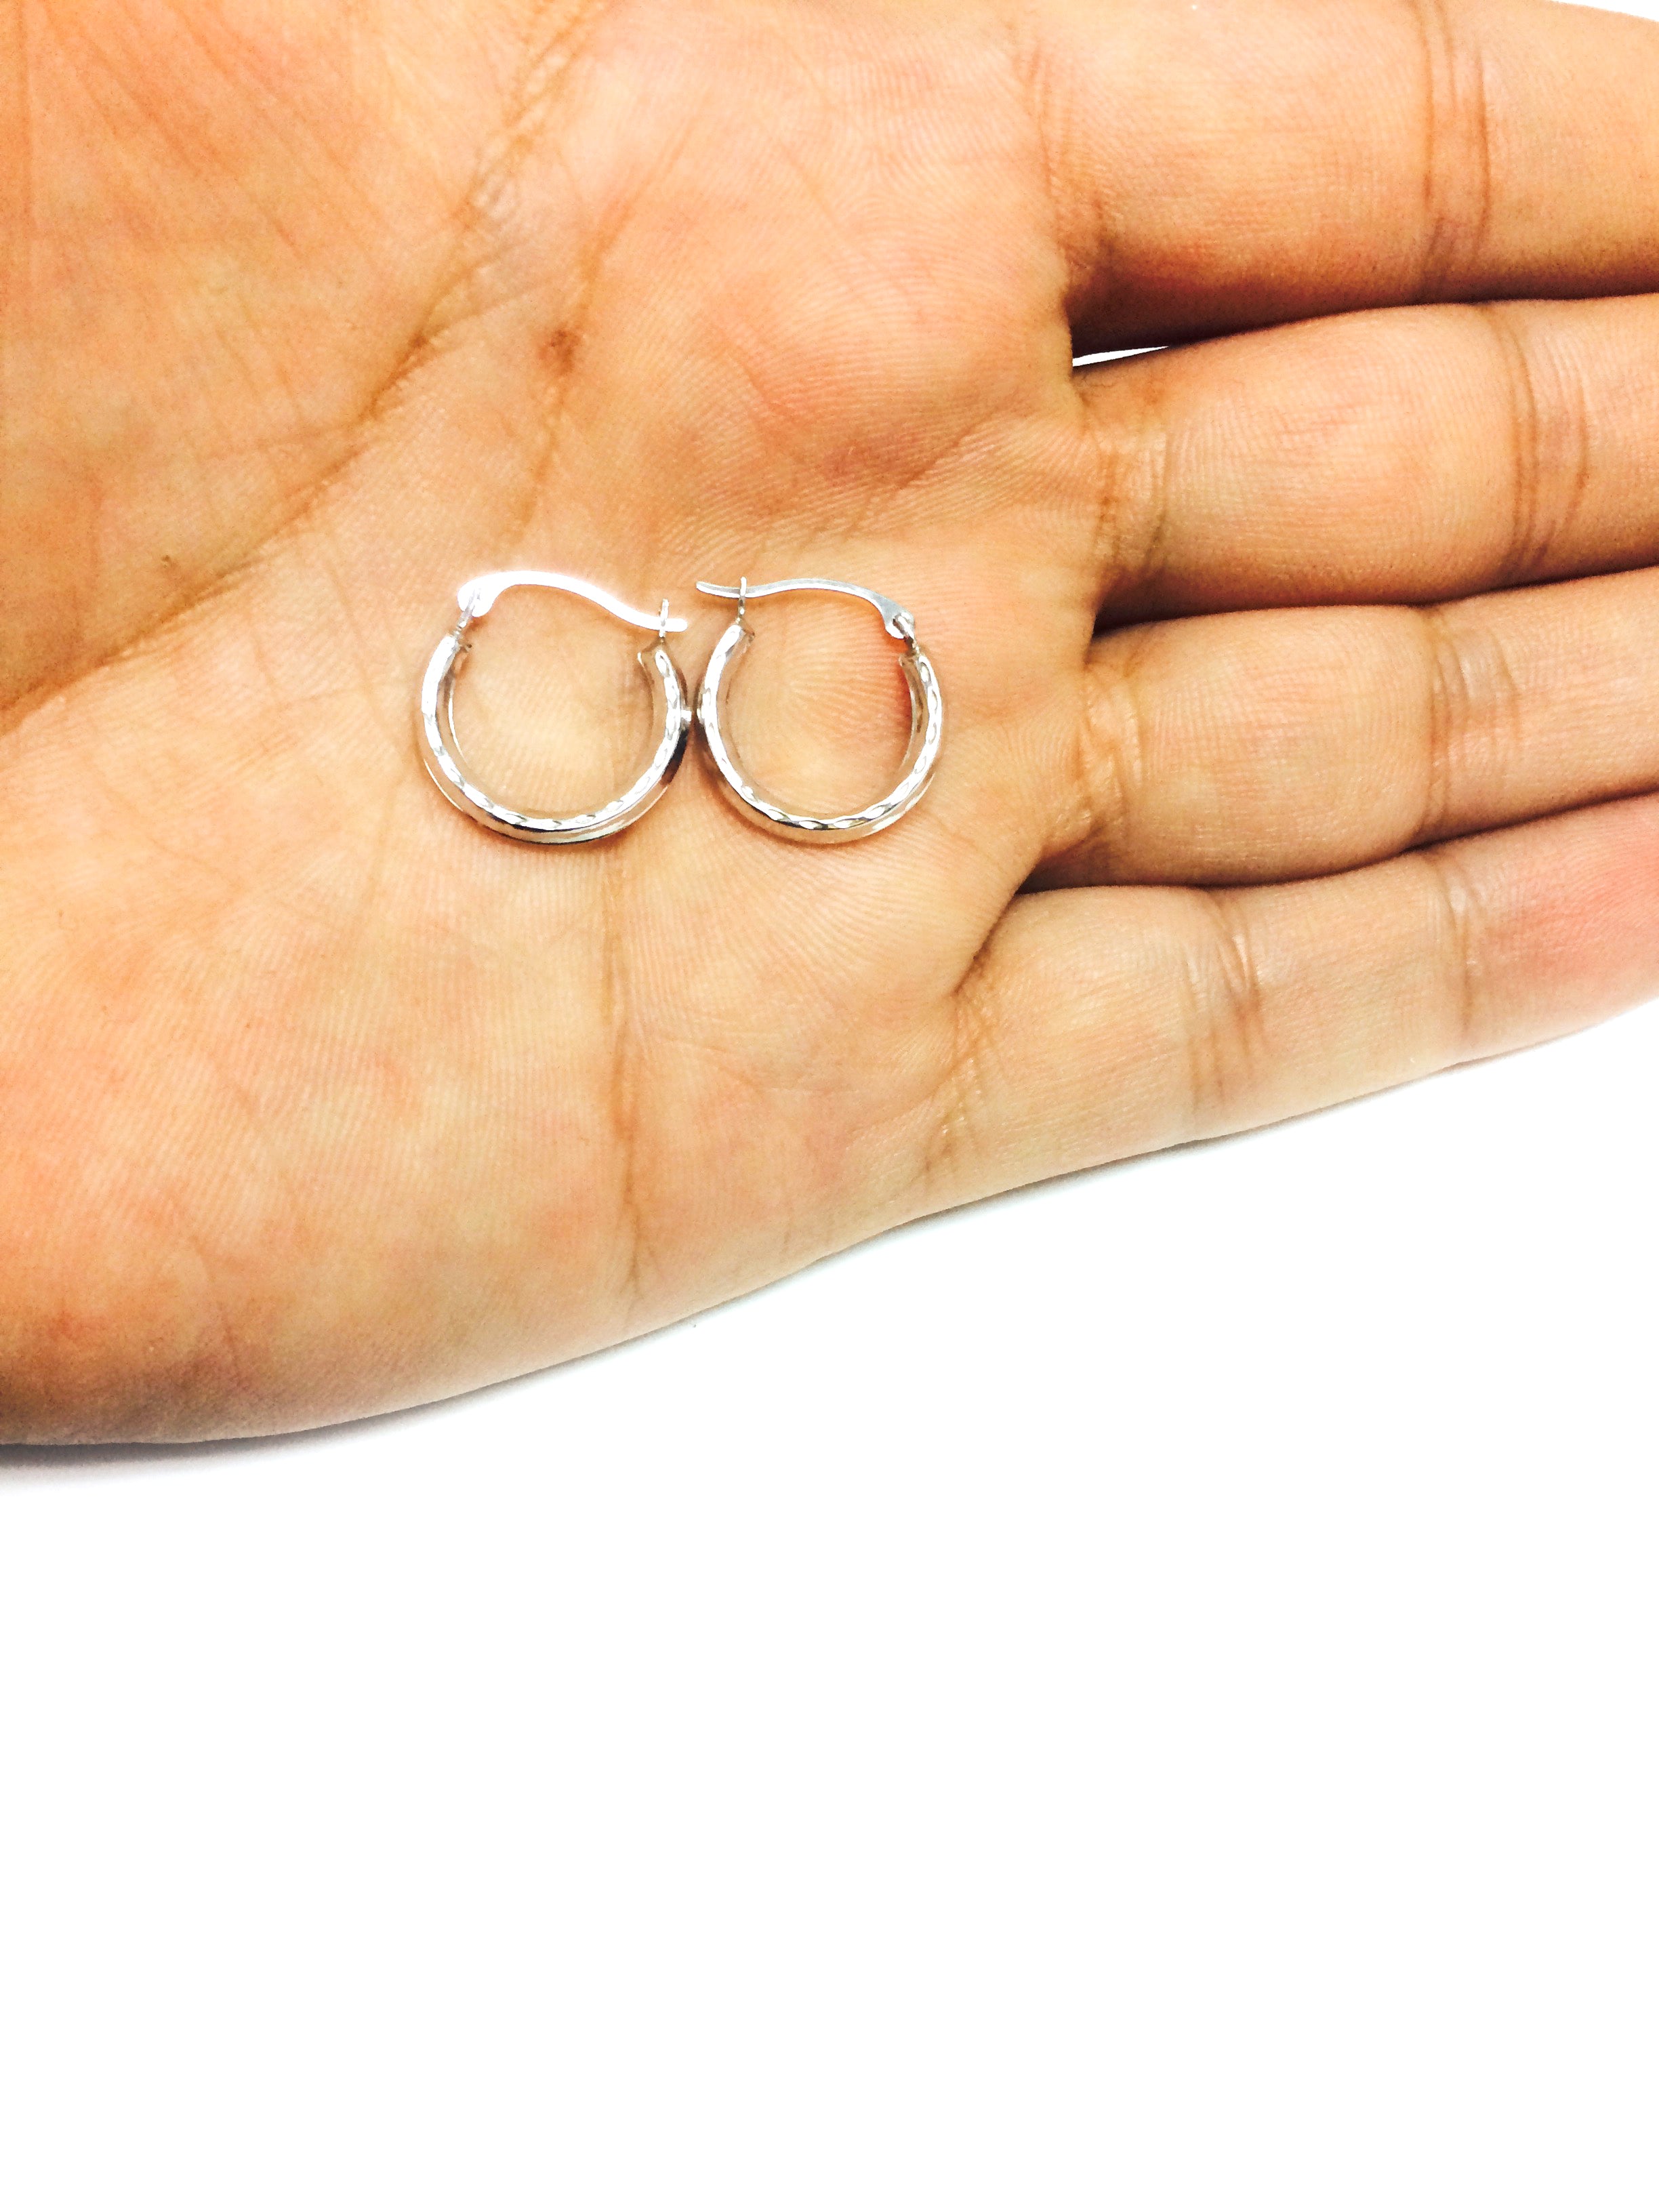 Orecchini a cerchio rotondi in oro bianco 10k lucido con taglio a diamante, diametro 15 mm, gioielli di design per uomo e donna